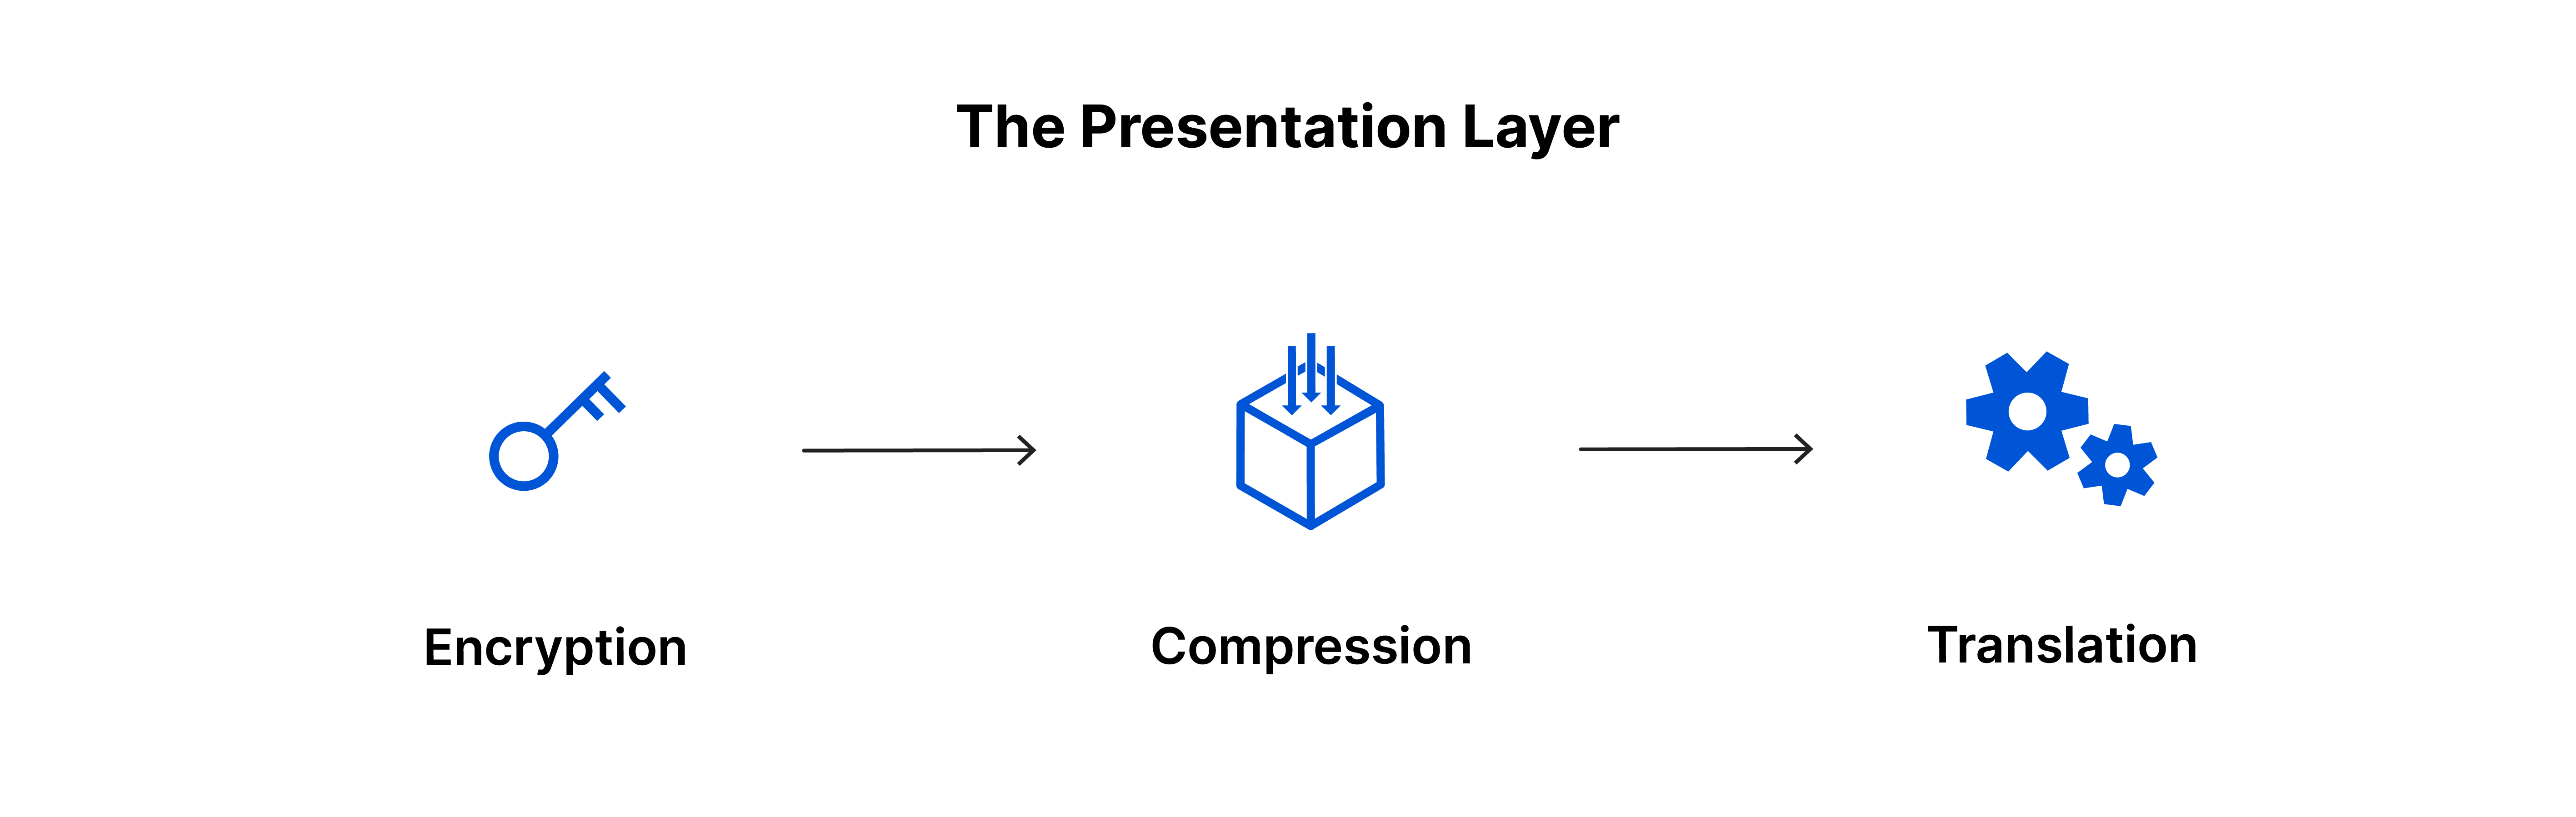 La capa de presentación: encriptación, compresión, traducción